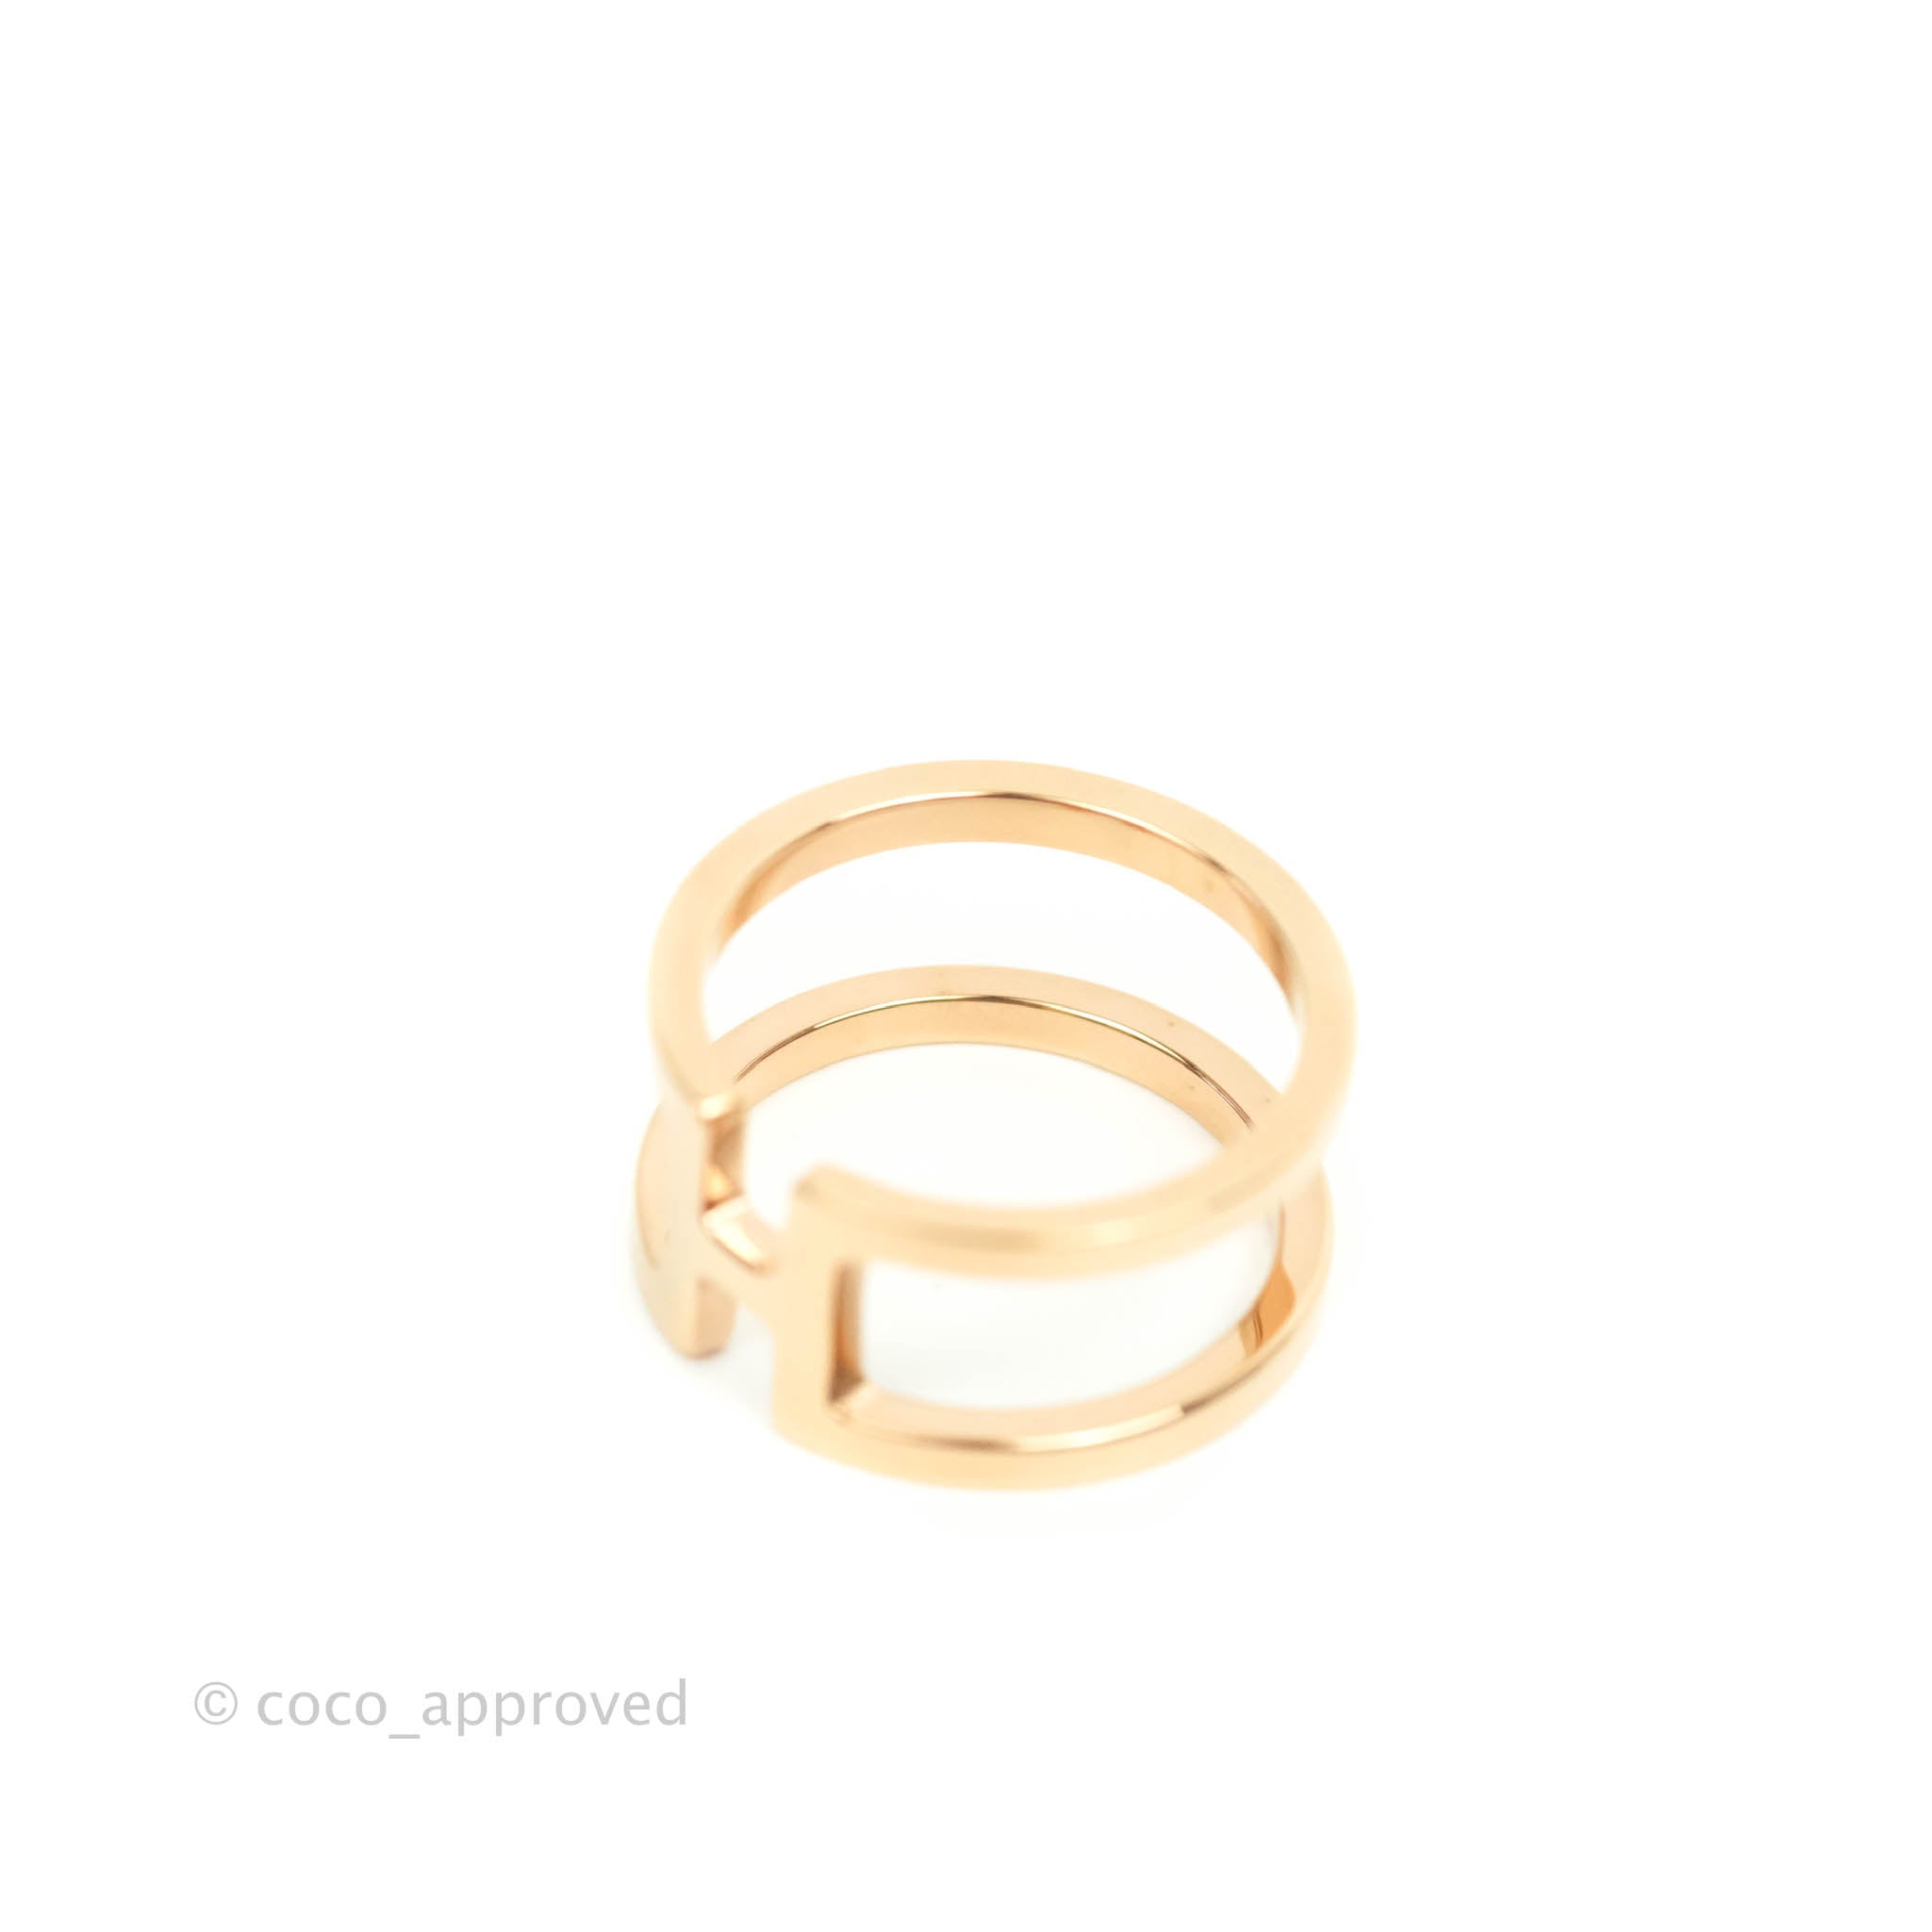 Hermes Scarf Ring Color Gold GP Size W 3cm H 3cm D 1cm Women'